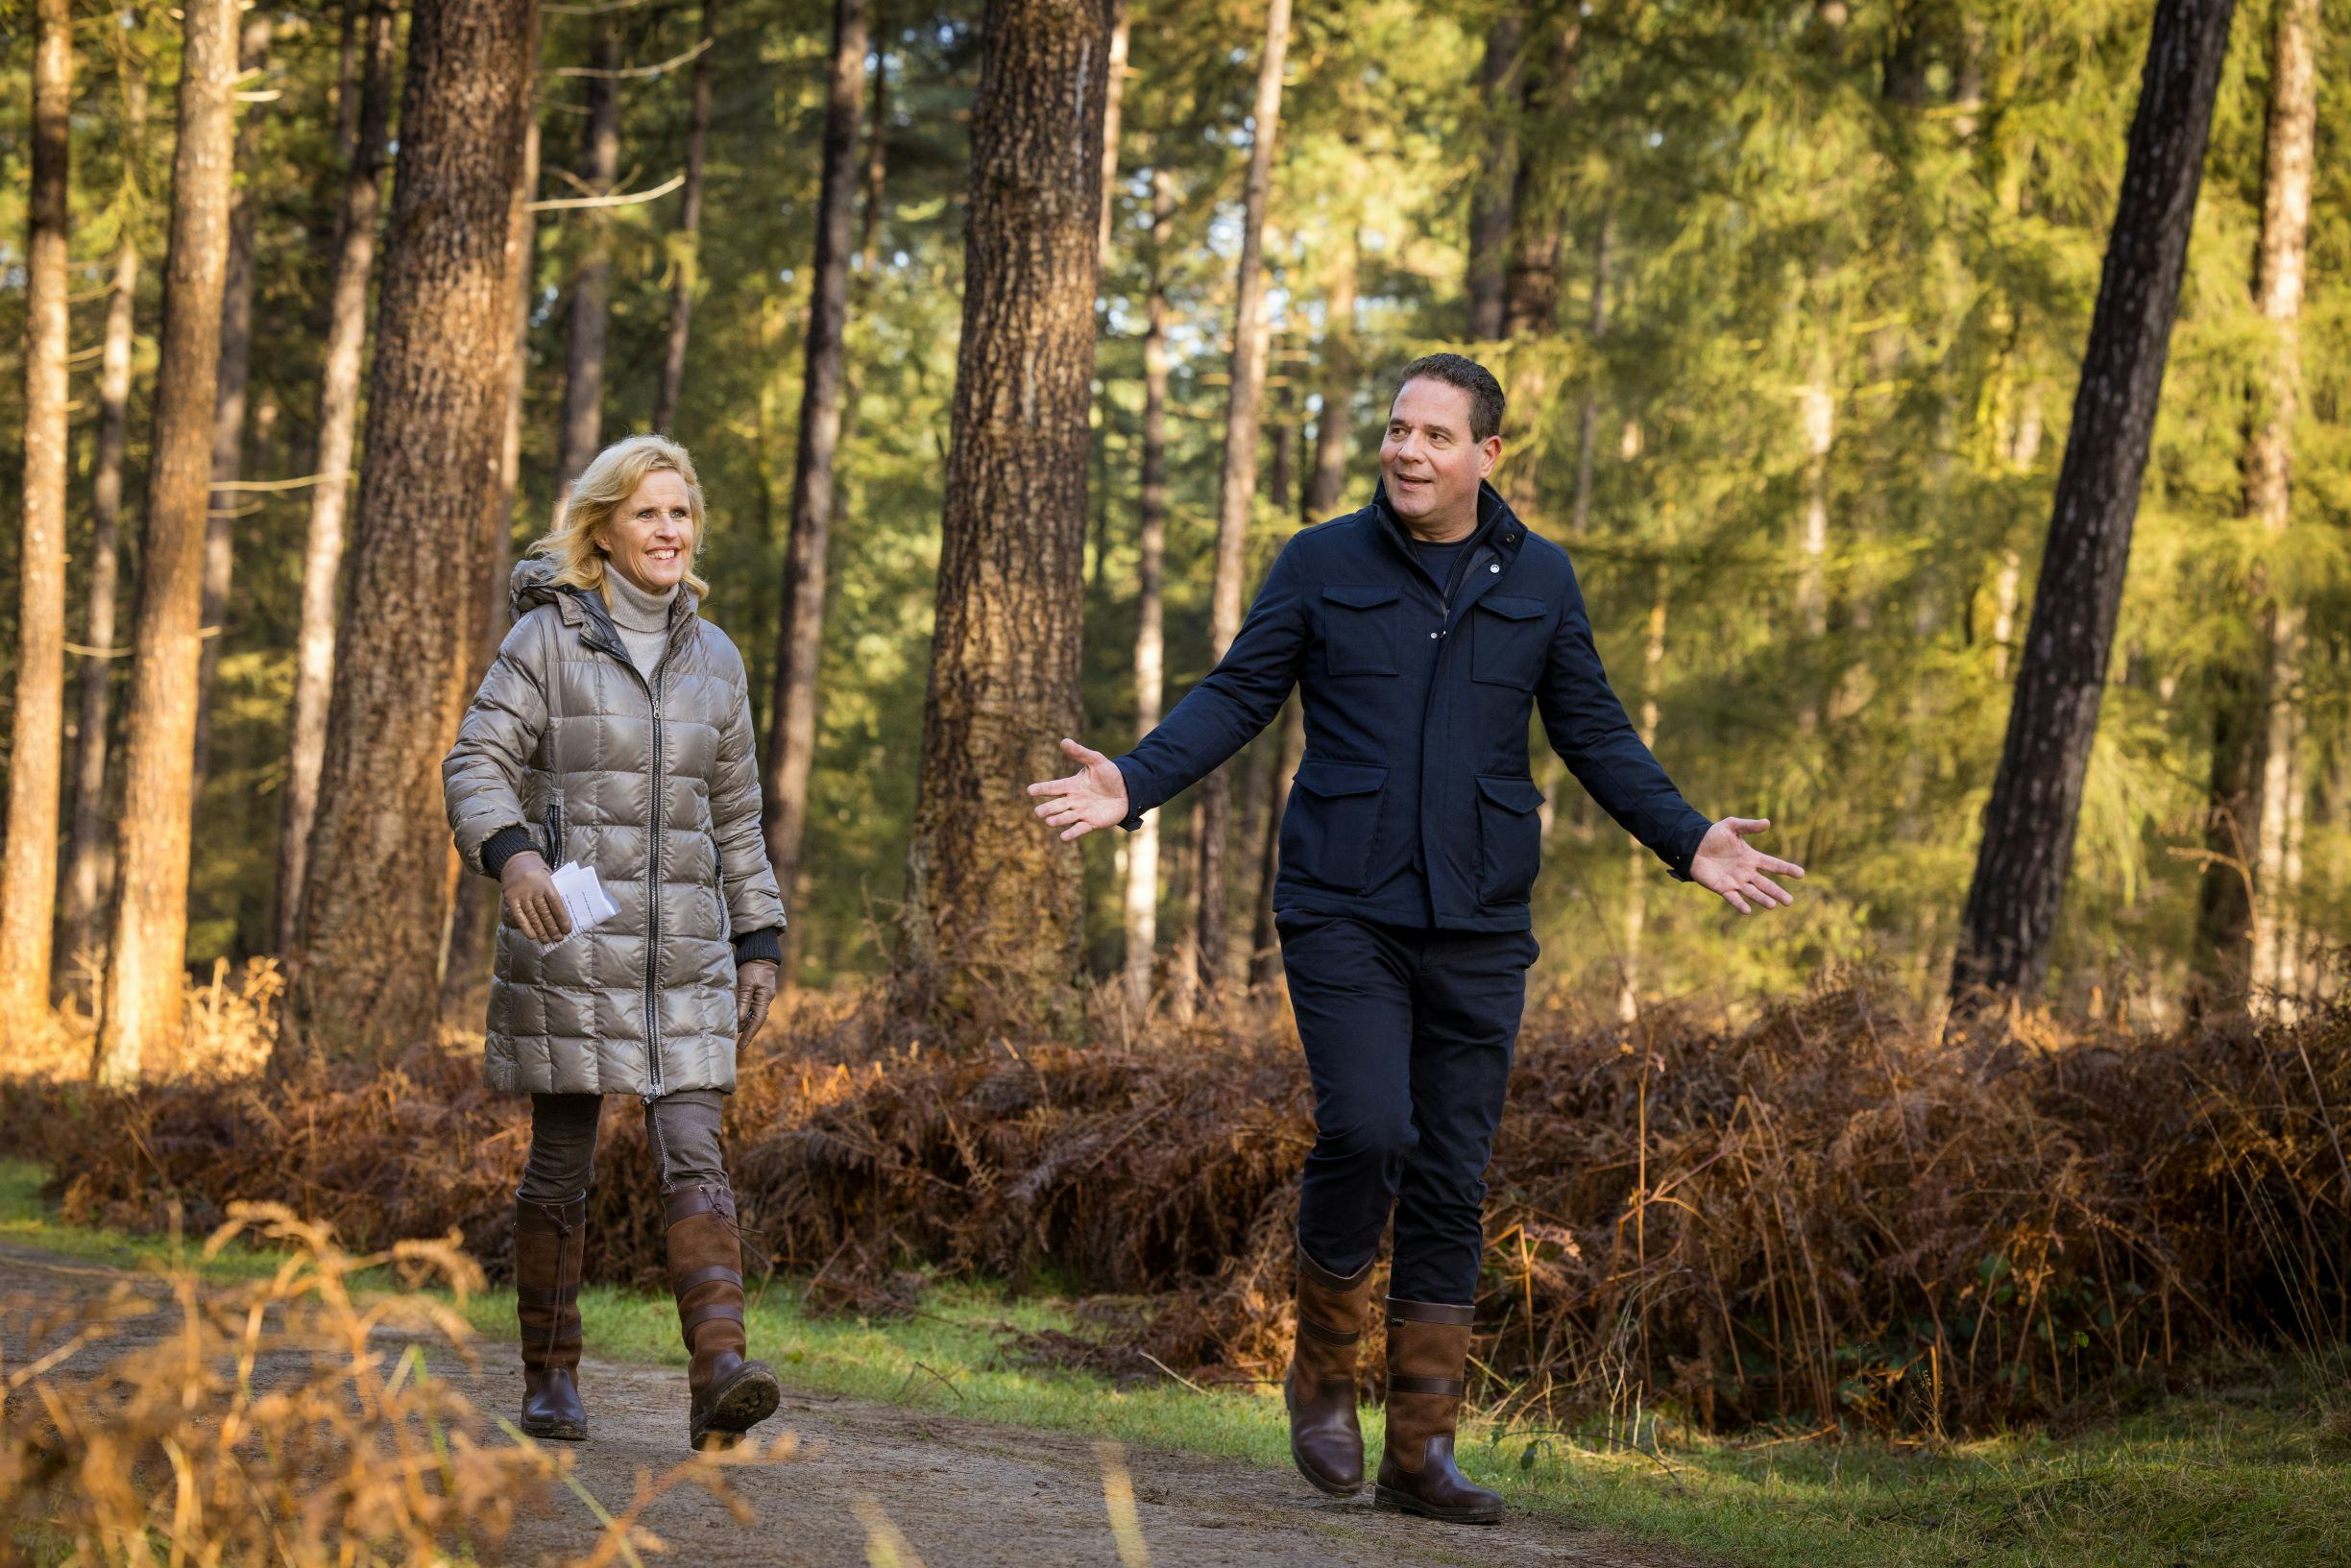 De wandeling met Michael de Nijs, CEO van Voogd & Voogd: 'Heerlijk om verantwoordelijkheid met meer mensen te delen'